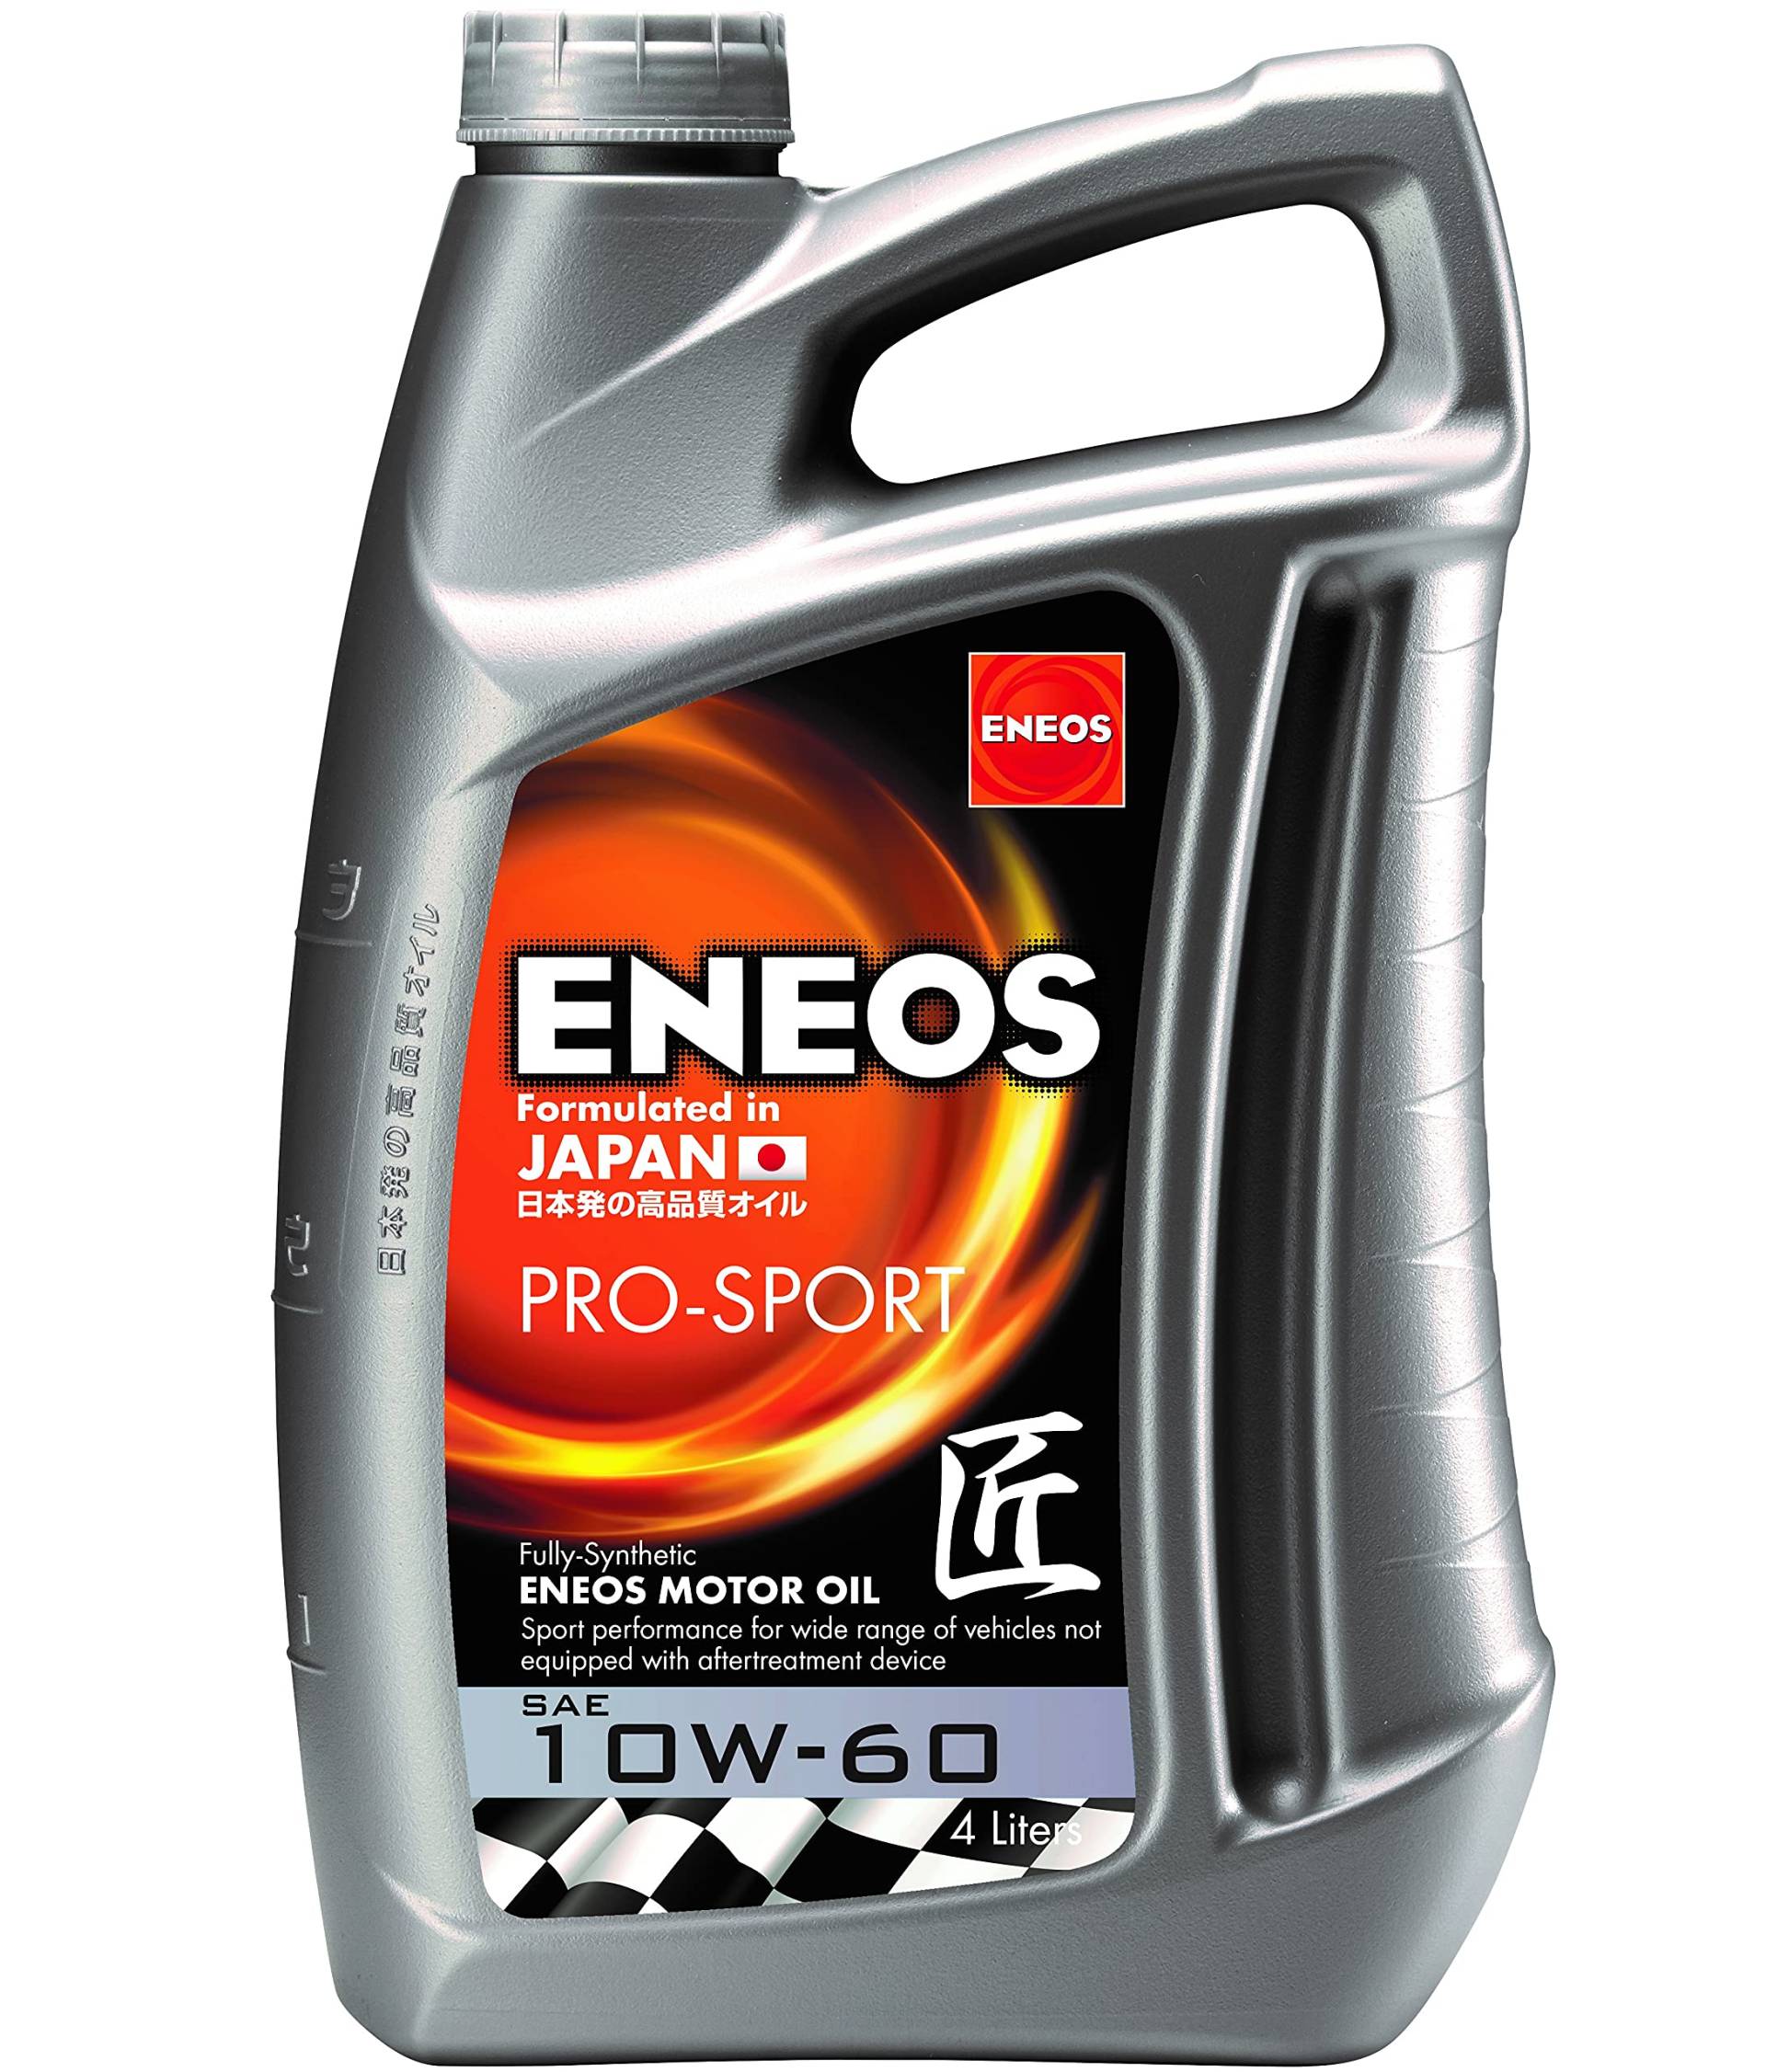 ENEOS Motoröl 10W60 “PRO SPORT” 4L - Motorenöl für Auto - Vollsynthetisch Motor Öl Für Hochleistungsmotoren in Sportwagen - Weniger Kraftstoffverbrauch von Eneos